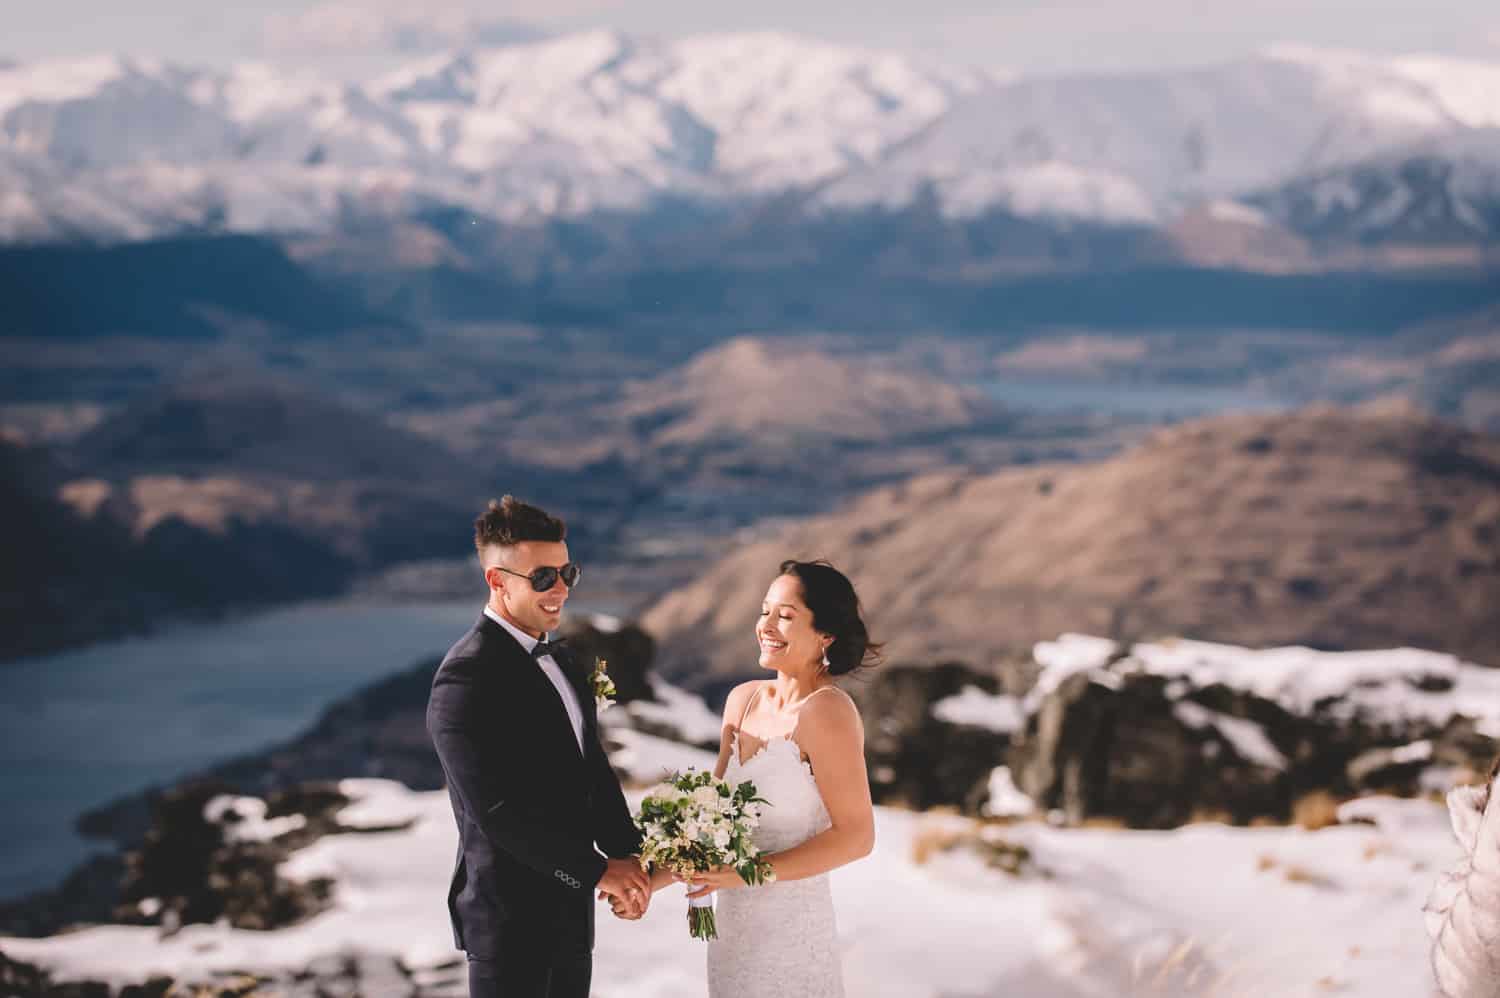 Snowy Cecil Peak Heli Wedding